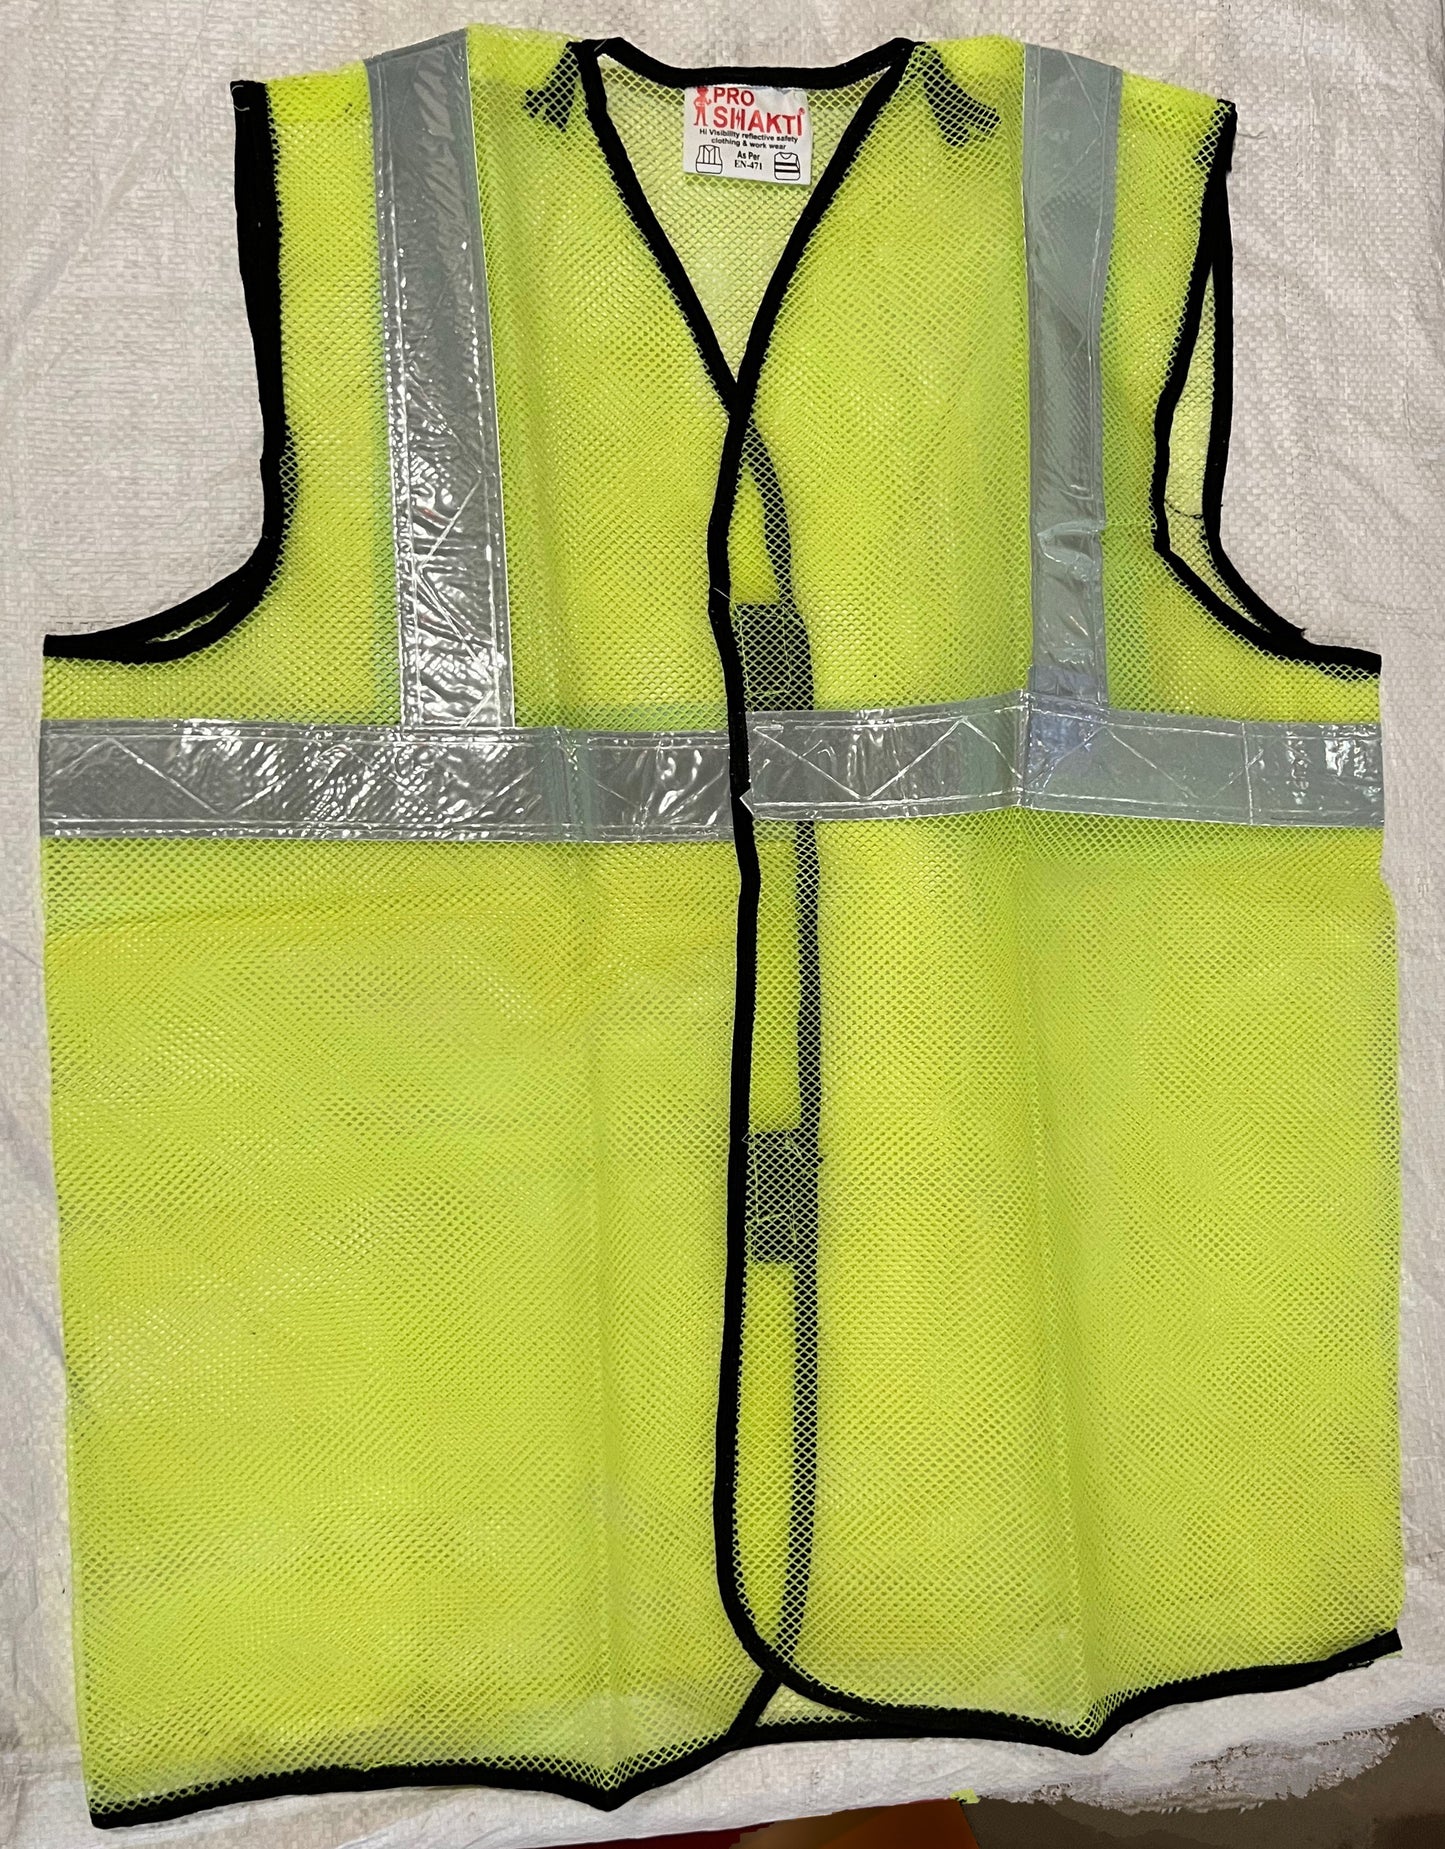 Pro Shakti Reflective Safety Jacket (Pack of 100)